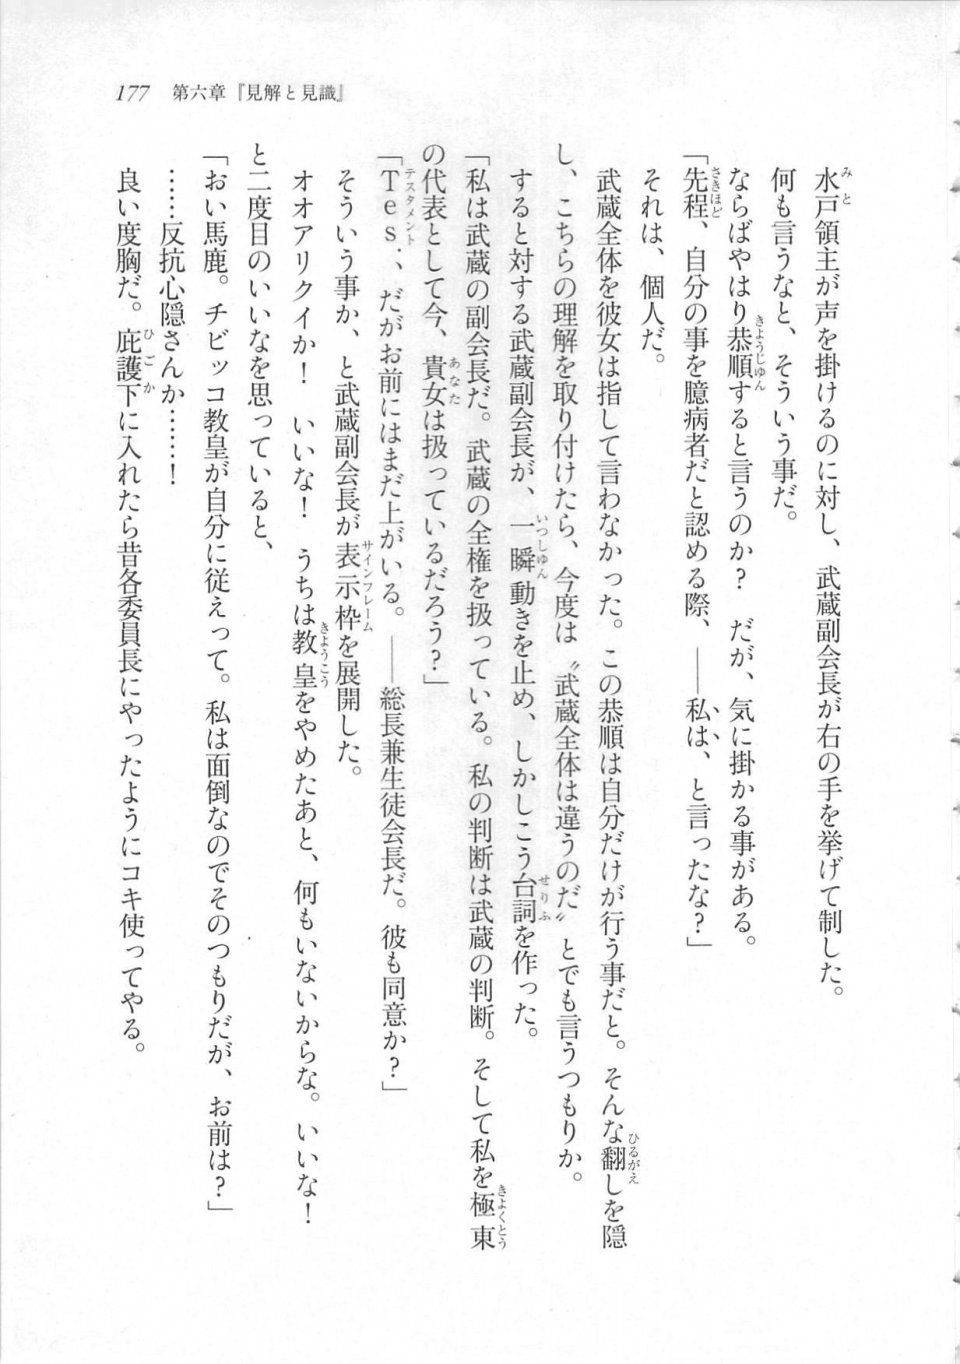 Kyoukai Senjou no Horizon LN Sidestory Vol 3 - Photo #181